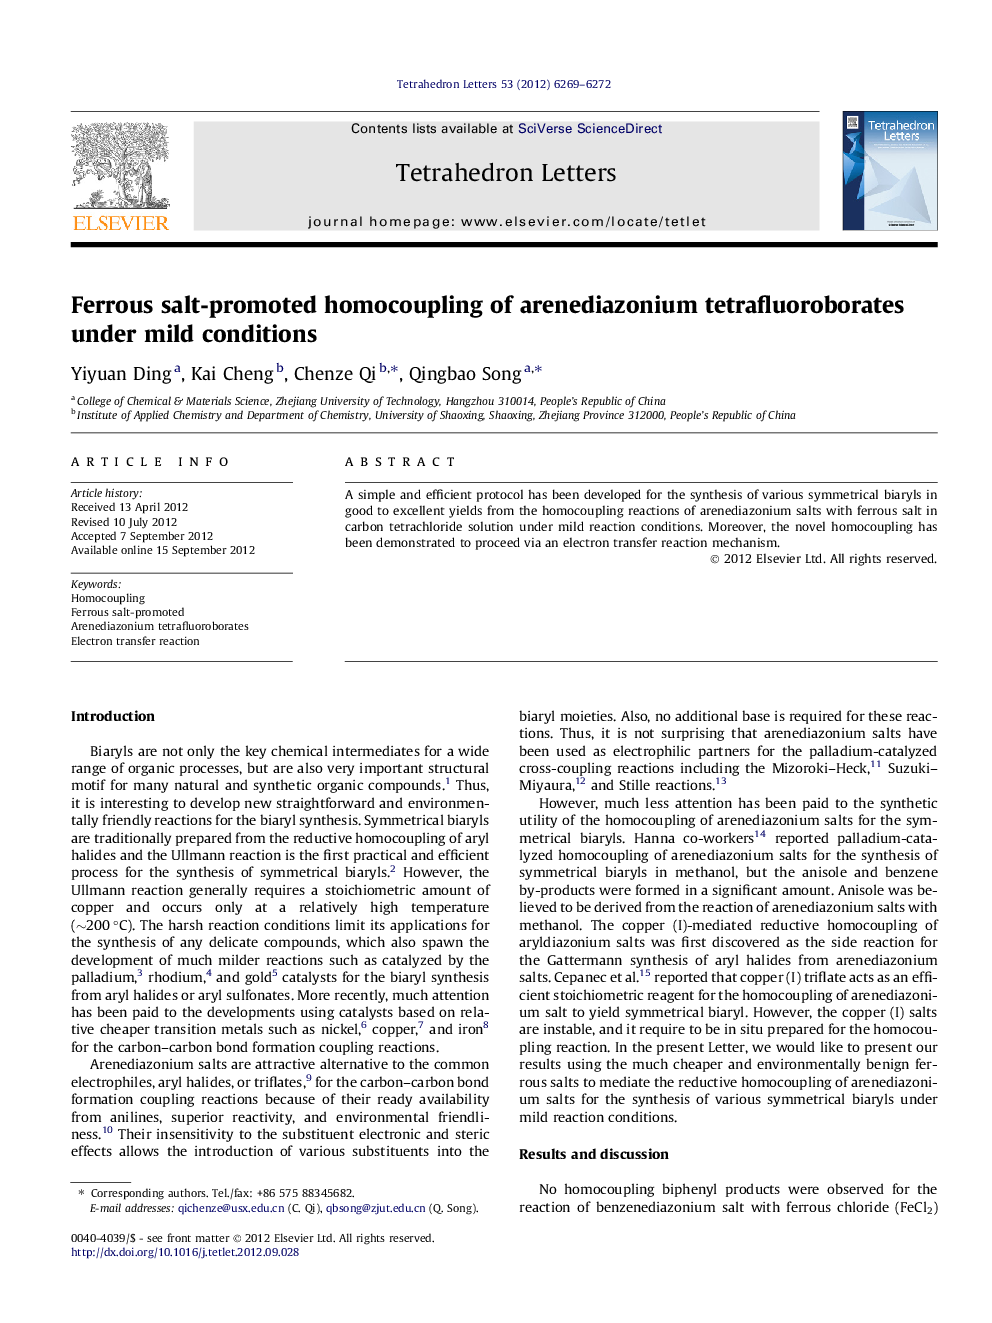 Ferrous salt-promoted homocoupling of arenediazonium tetrafluoroborates under mild conditions